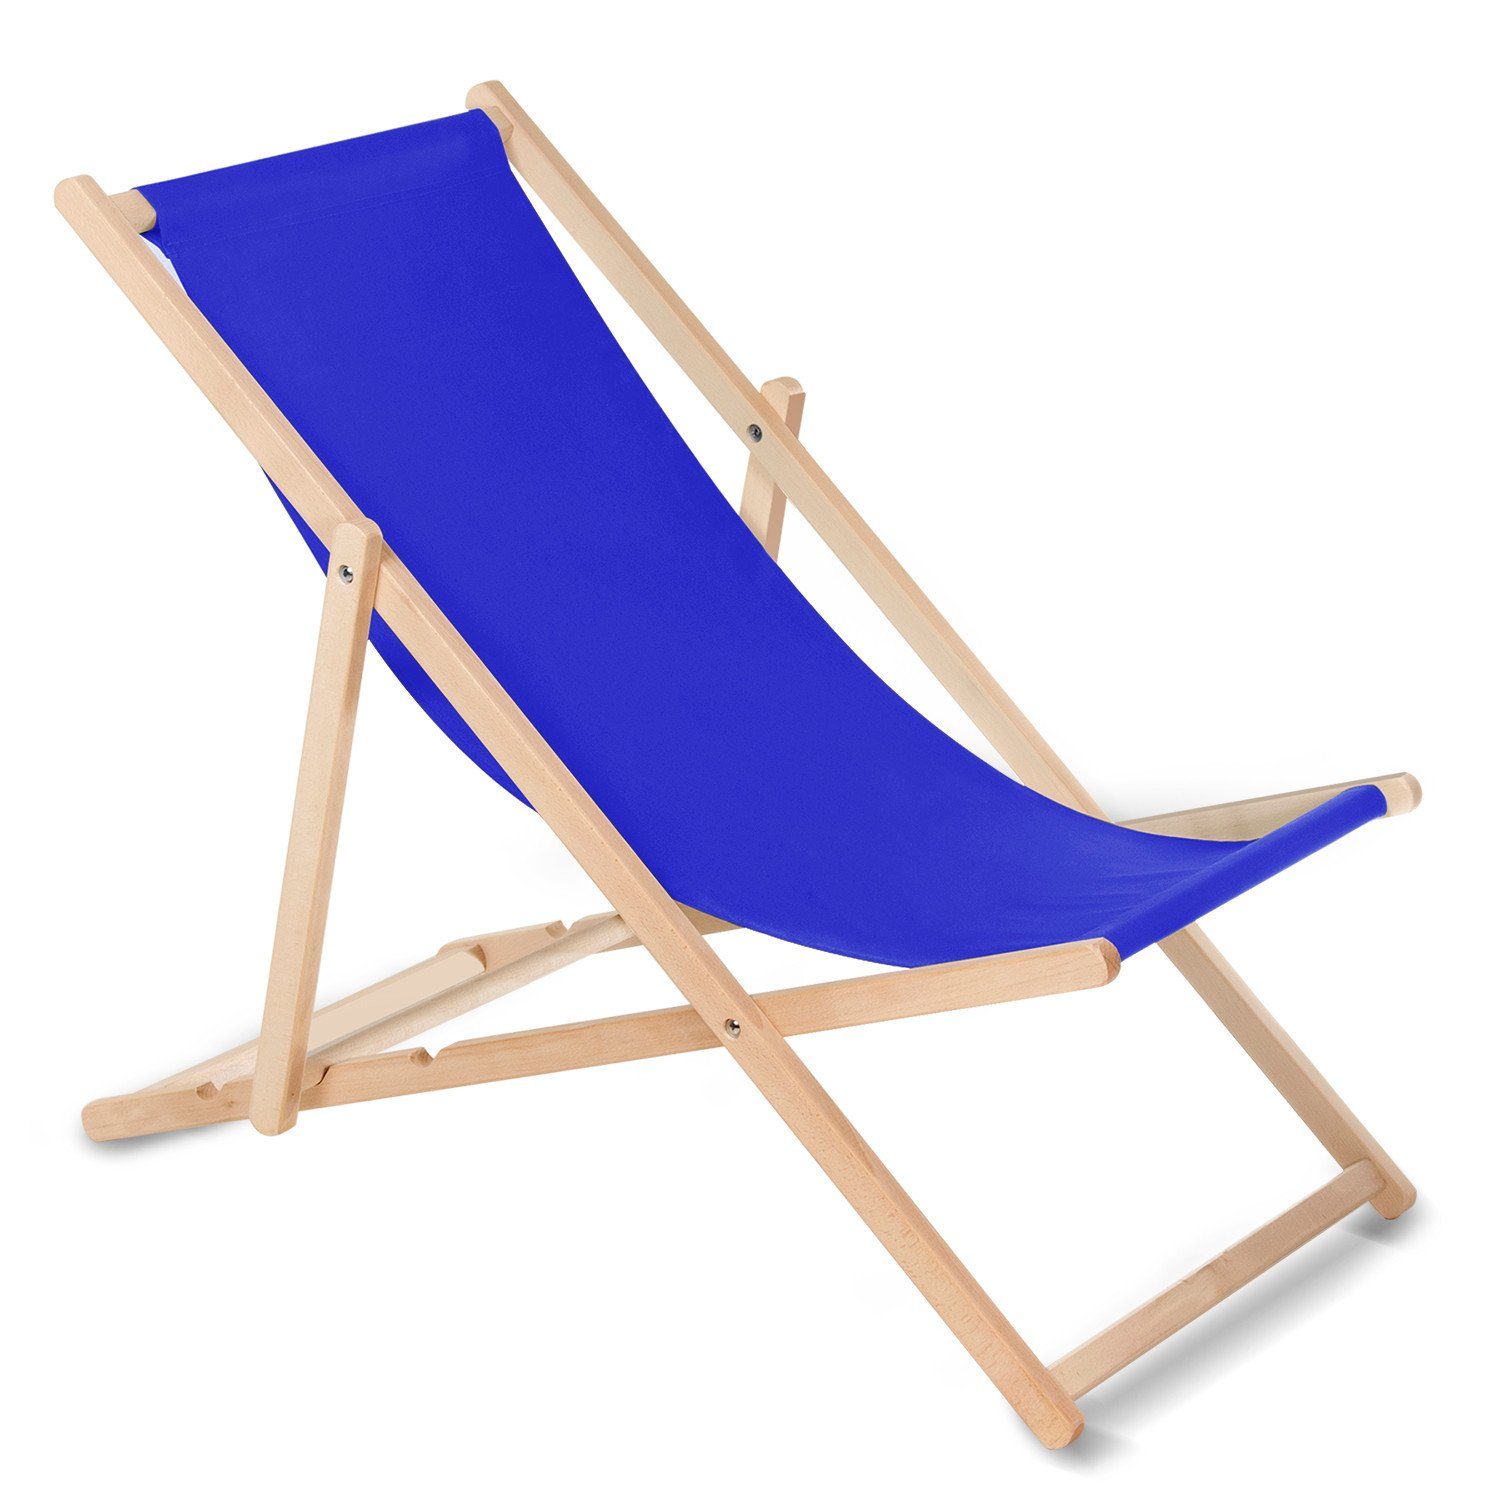 [Niedrigster Preis und höchste Qualität] GreenBlue Gartenliege GB183, Klassischer Liegestuhl Blau Rückenlehnen mit 3-Stufen